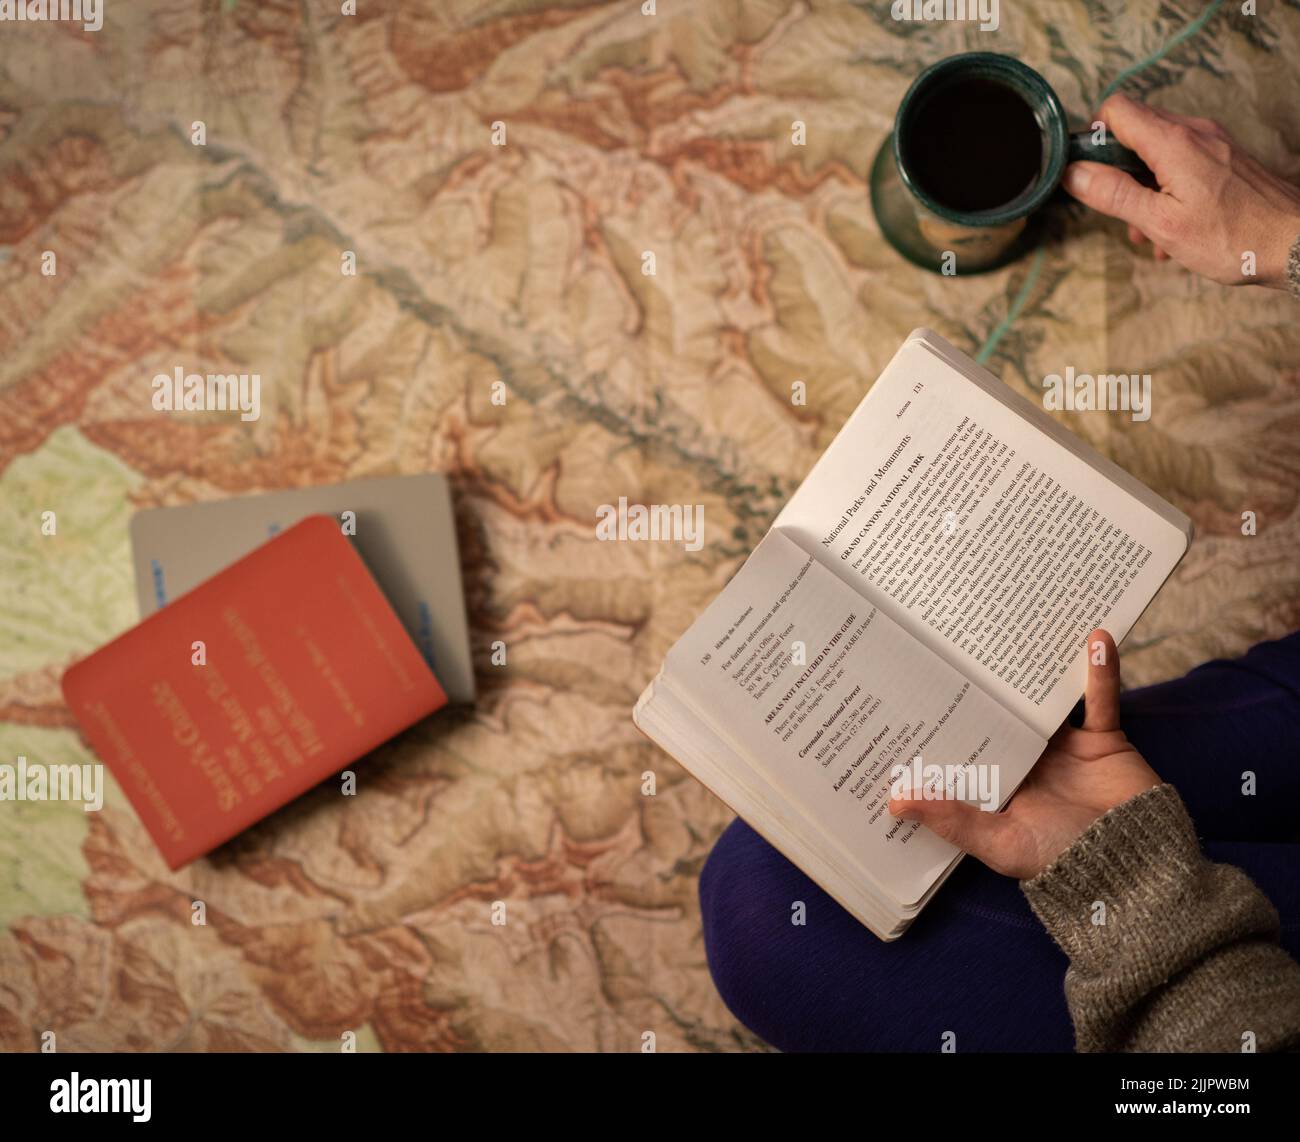 Die Hände einer Person, die einen Reiseführer und eine Tasse Kaffee mit Reiseführern und einer Karte im Hintergrund hält Stockfoto